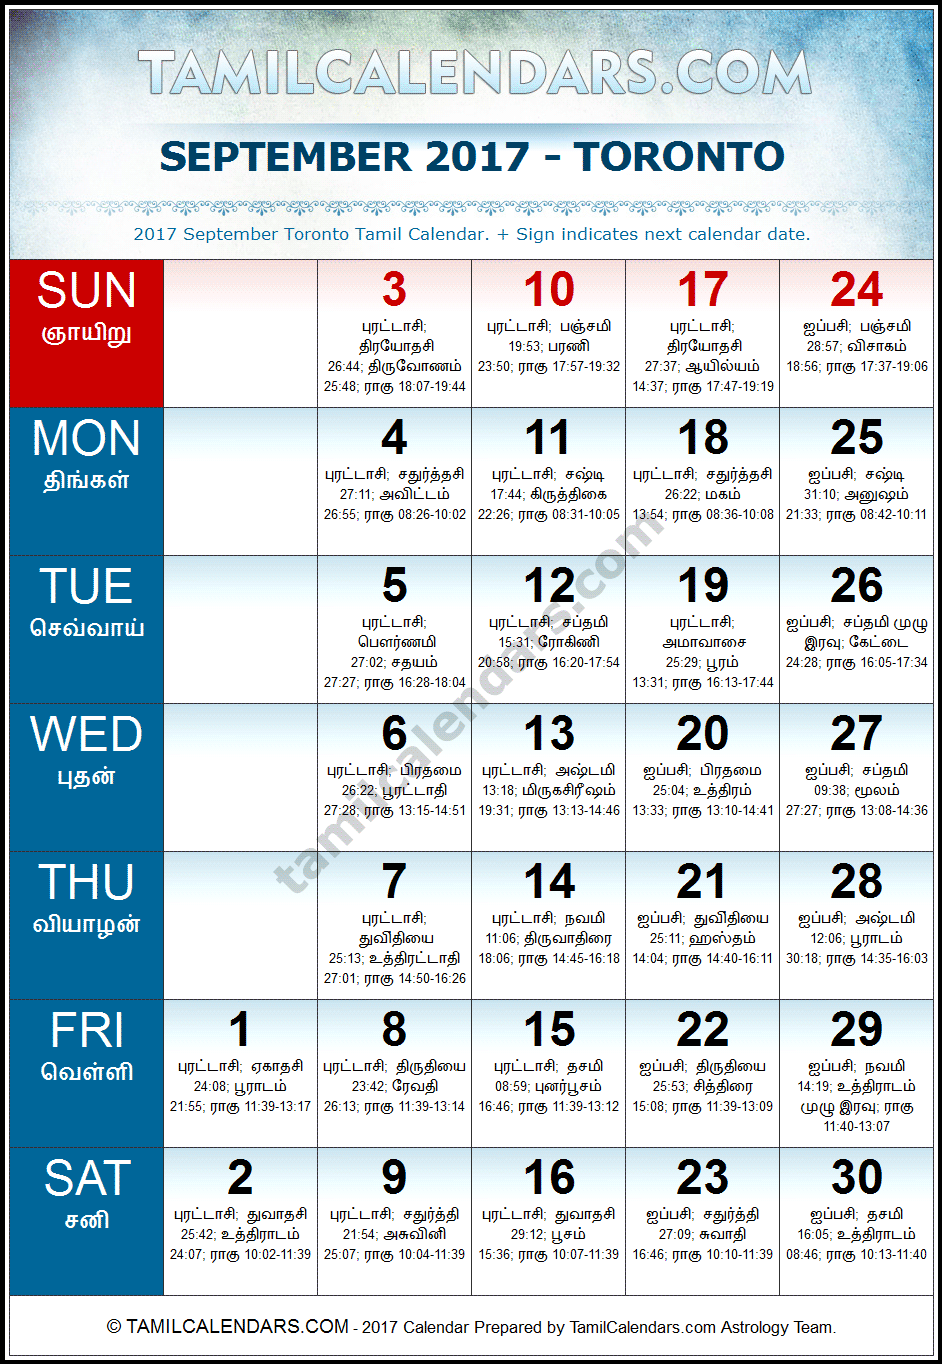 September 2017 Tamil Calendar for Toronto, Canada